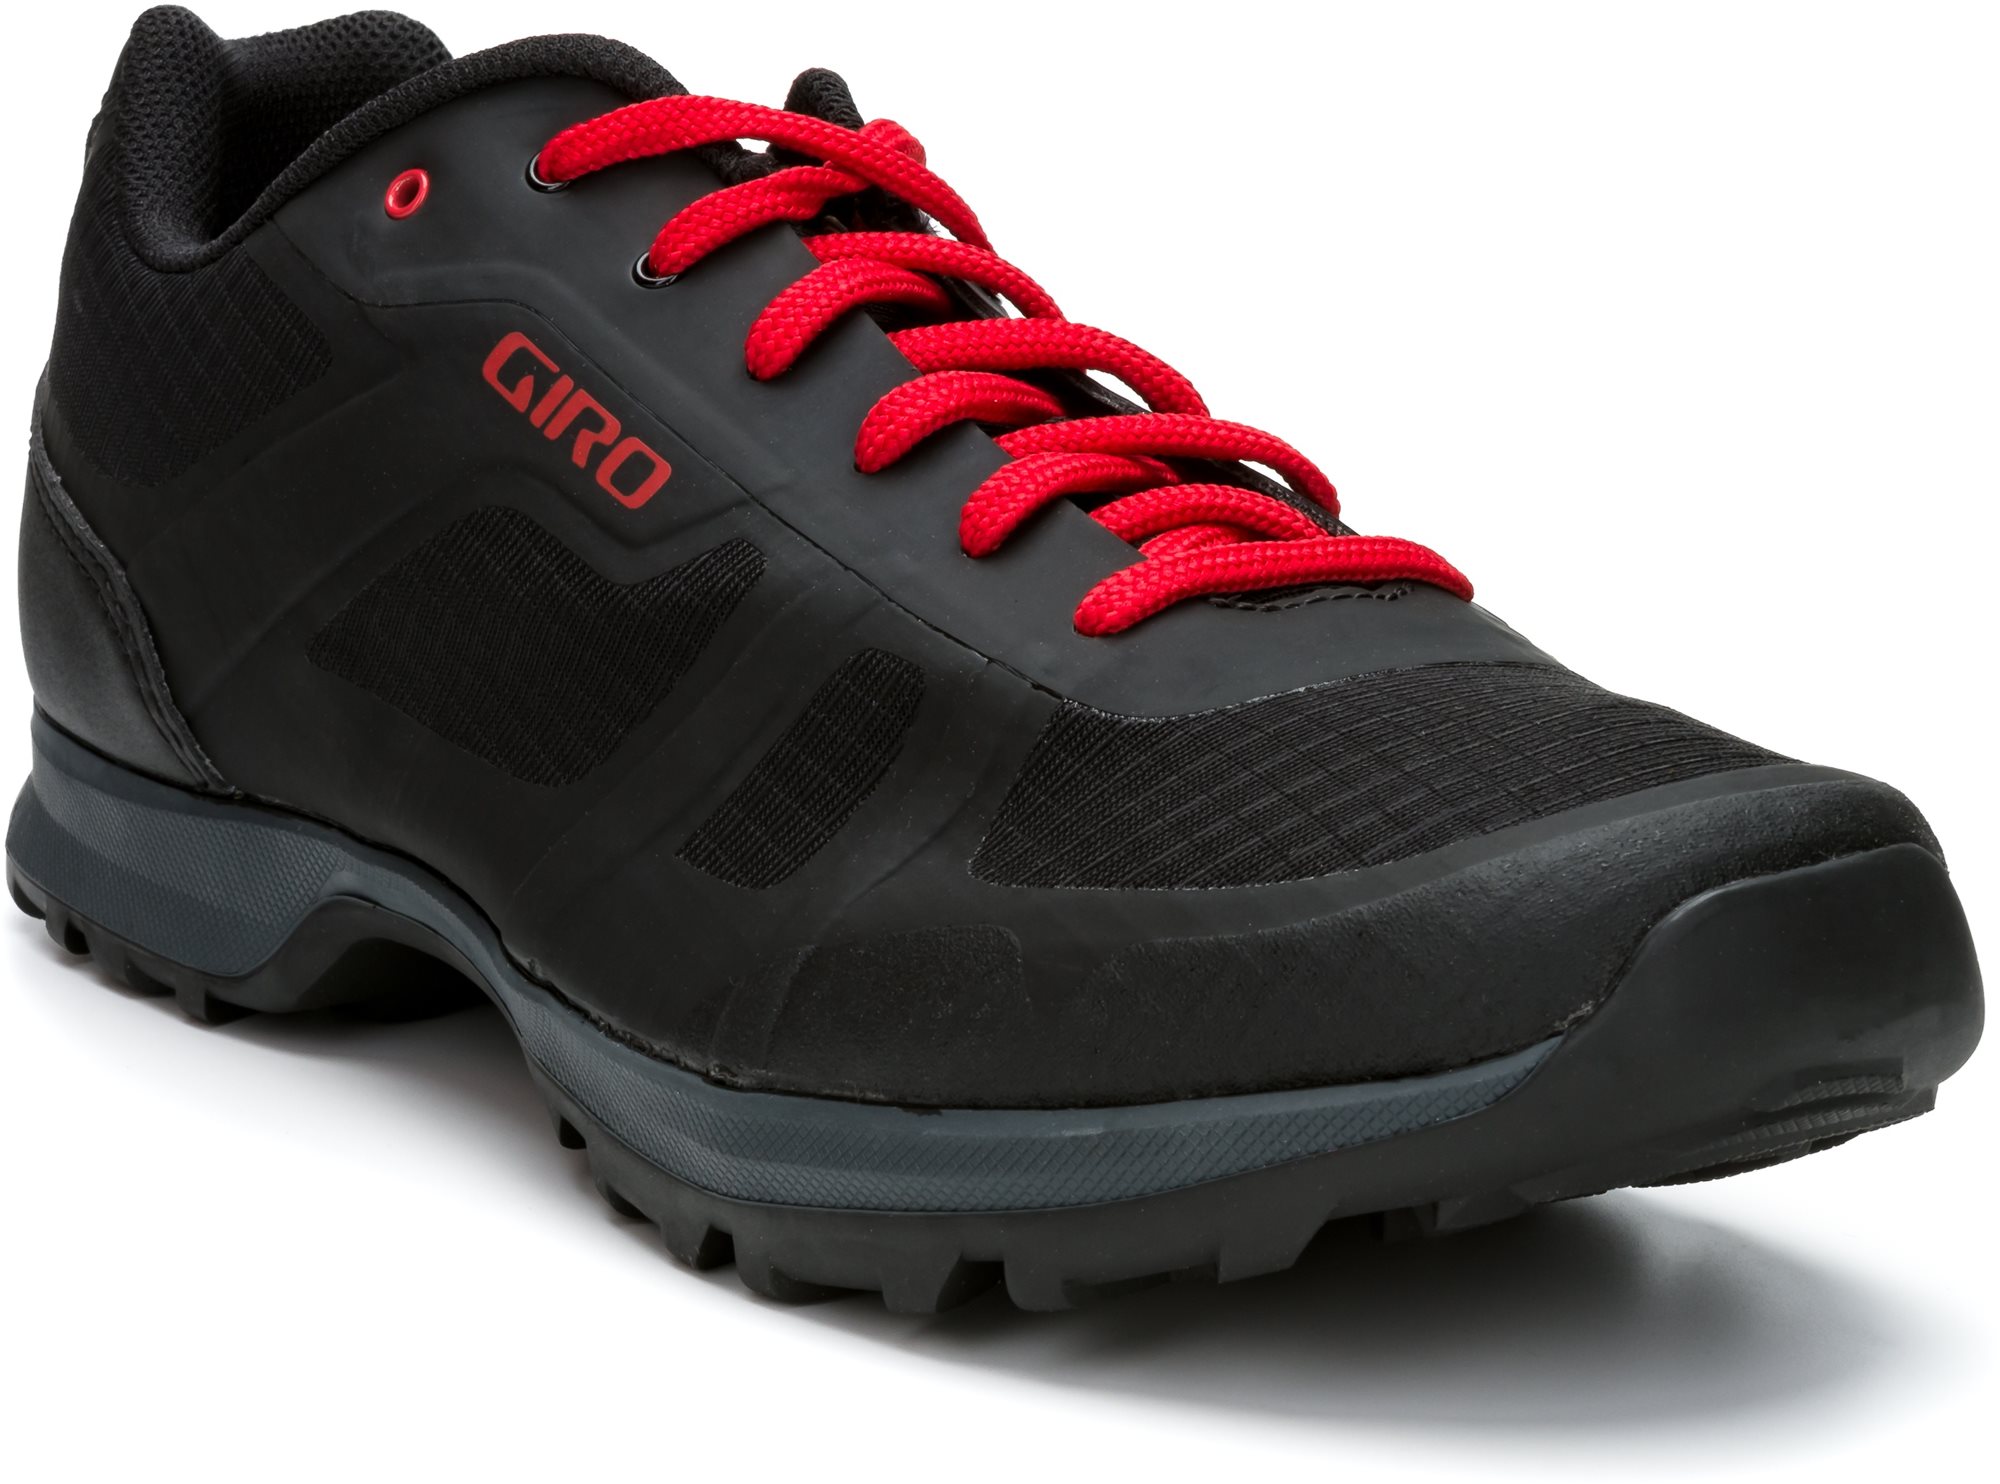 GIRO Gauge kerékpáros cipő, fekete/világos piros, 44-es